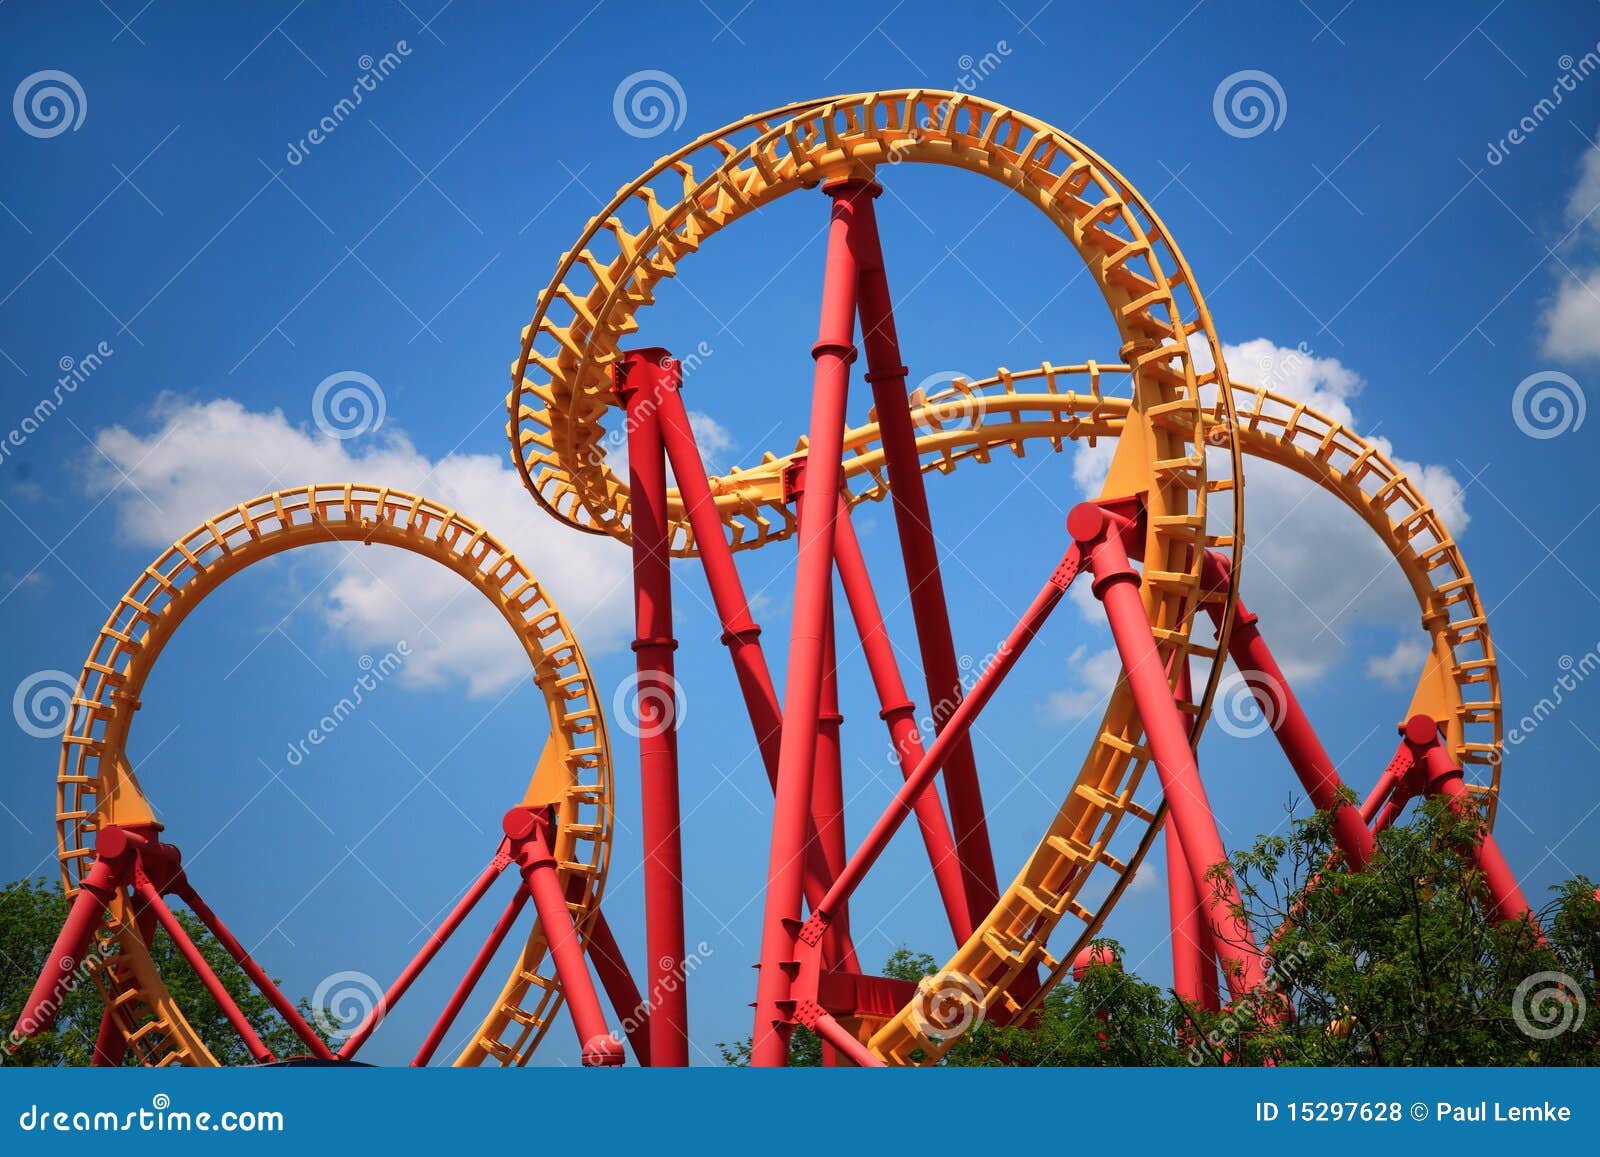 looping roller coaster